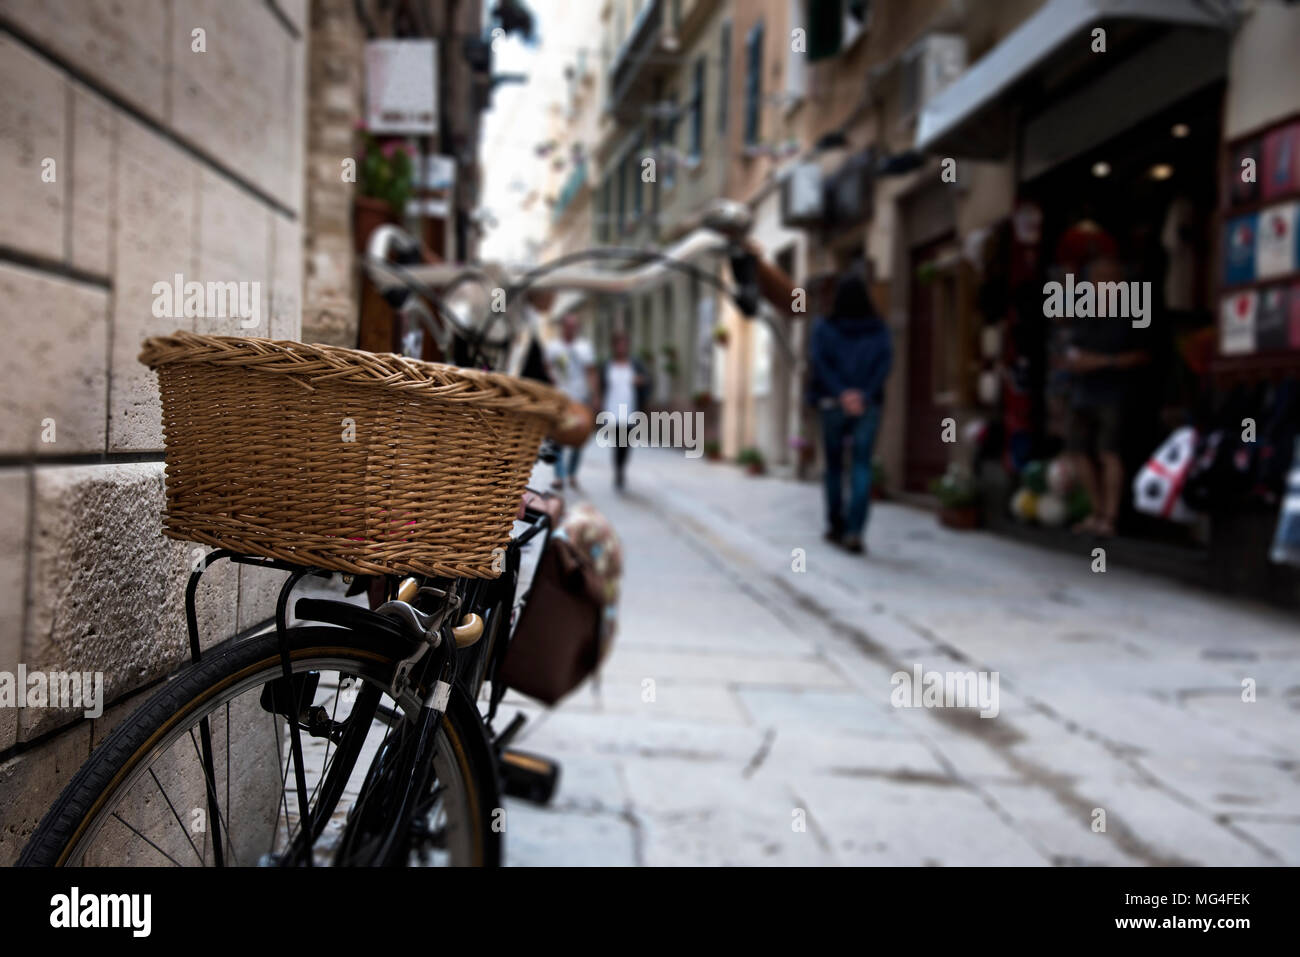 Una strada pedonale nel centro storico di Alghero, Sardegna, Italia, con una vecchia bicicletta parcheggiata in una parete in primo piano Foto Stock